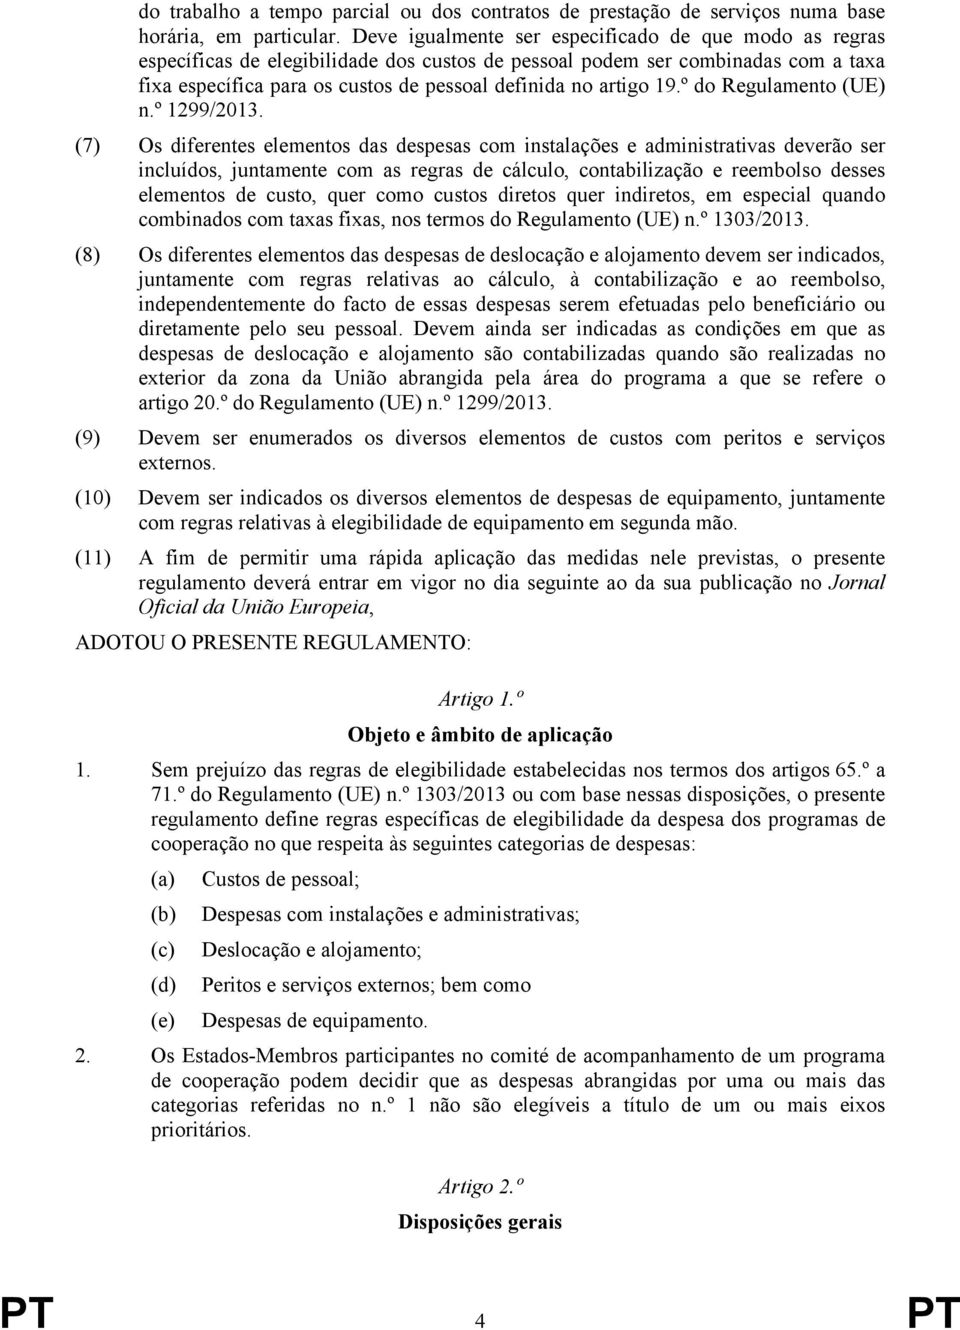 19.º do Regulamento (UE) n.º 1299/2013.